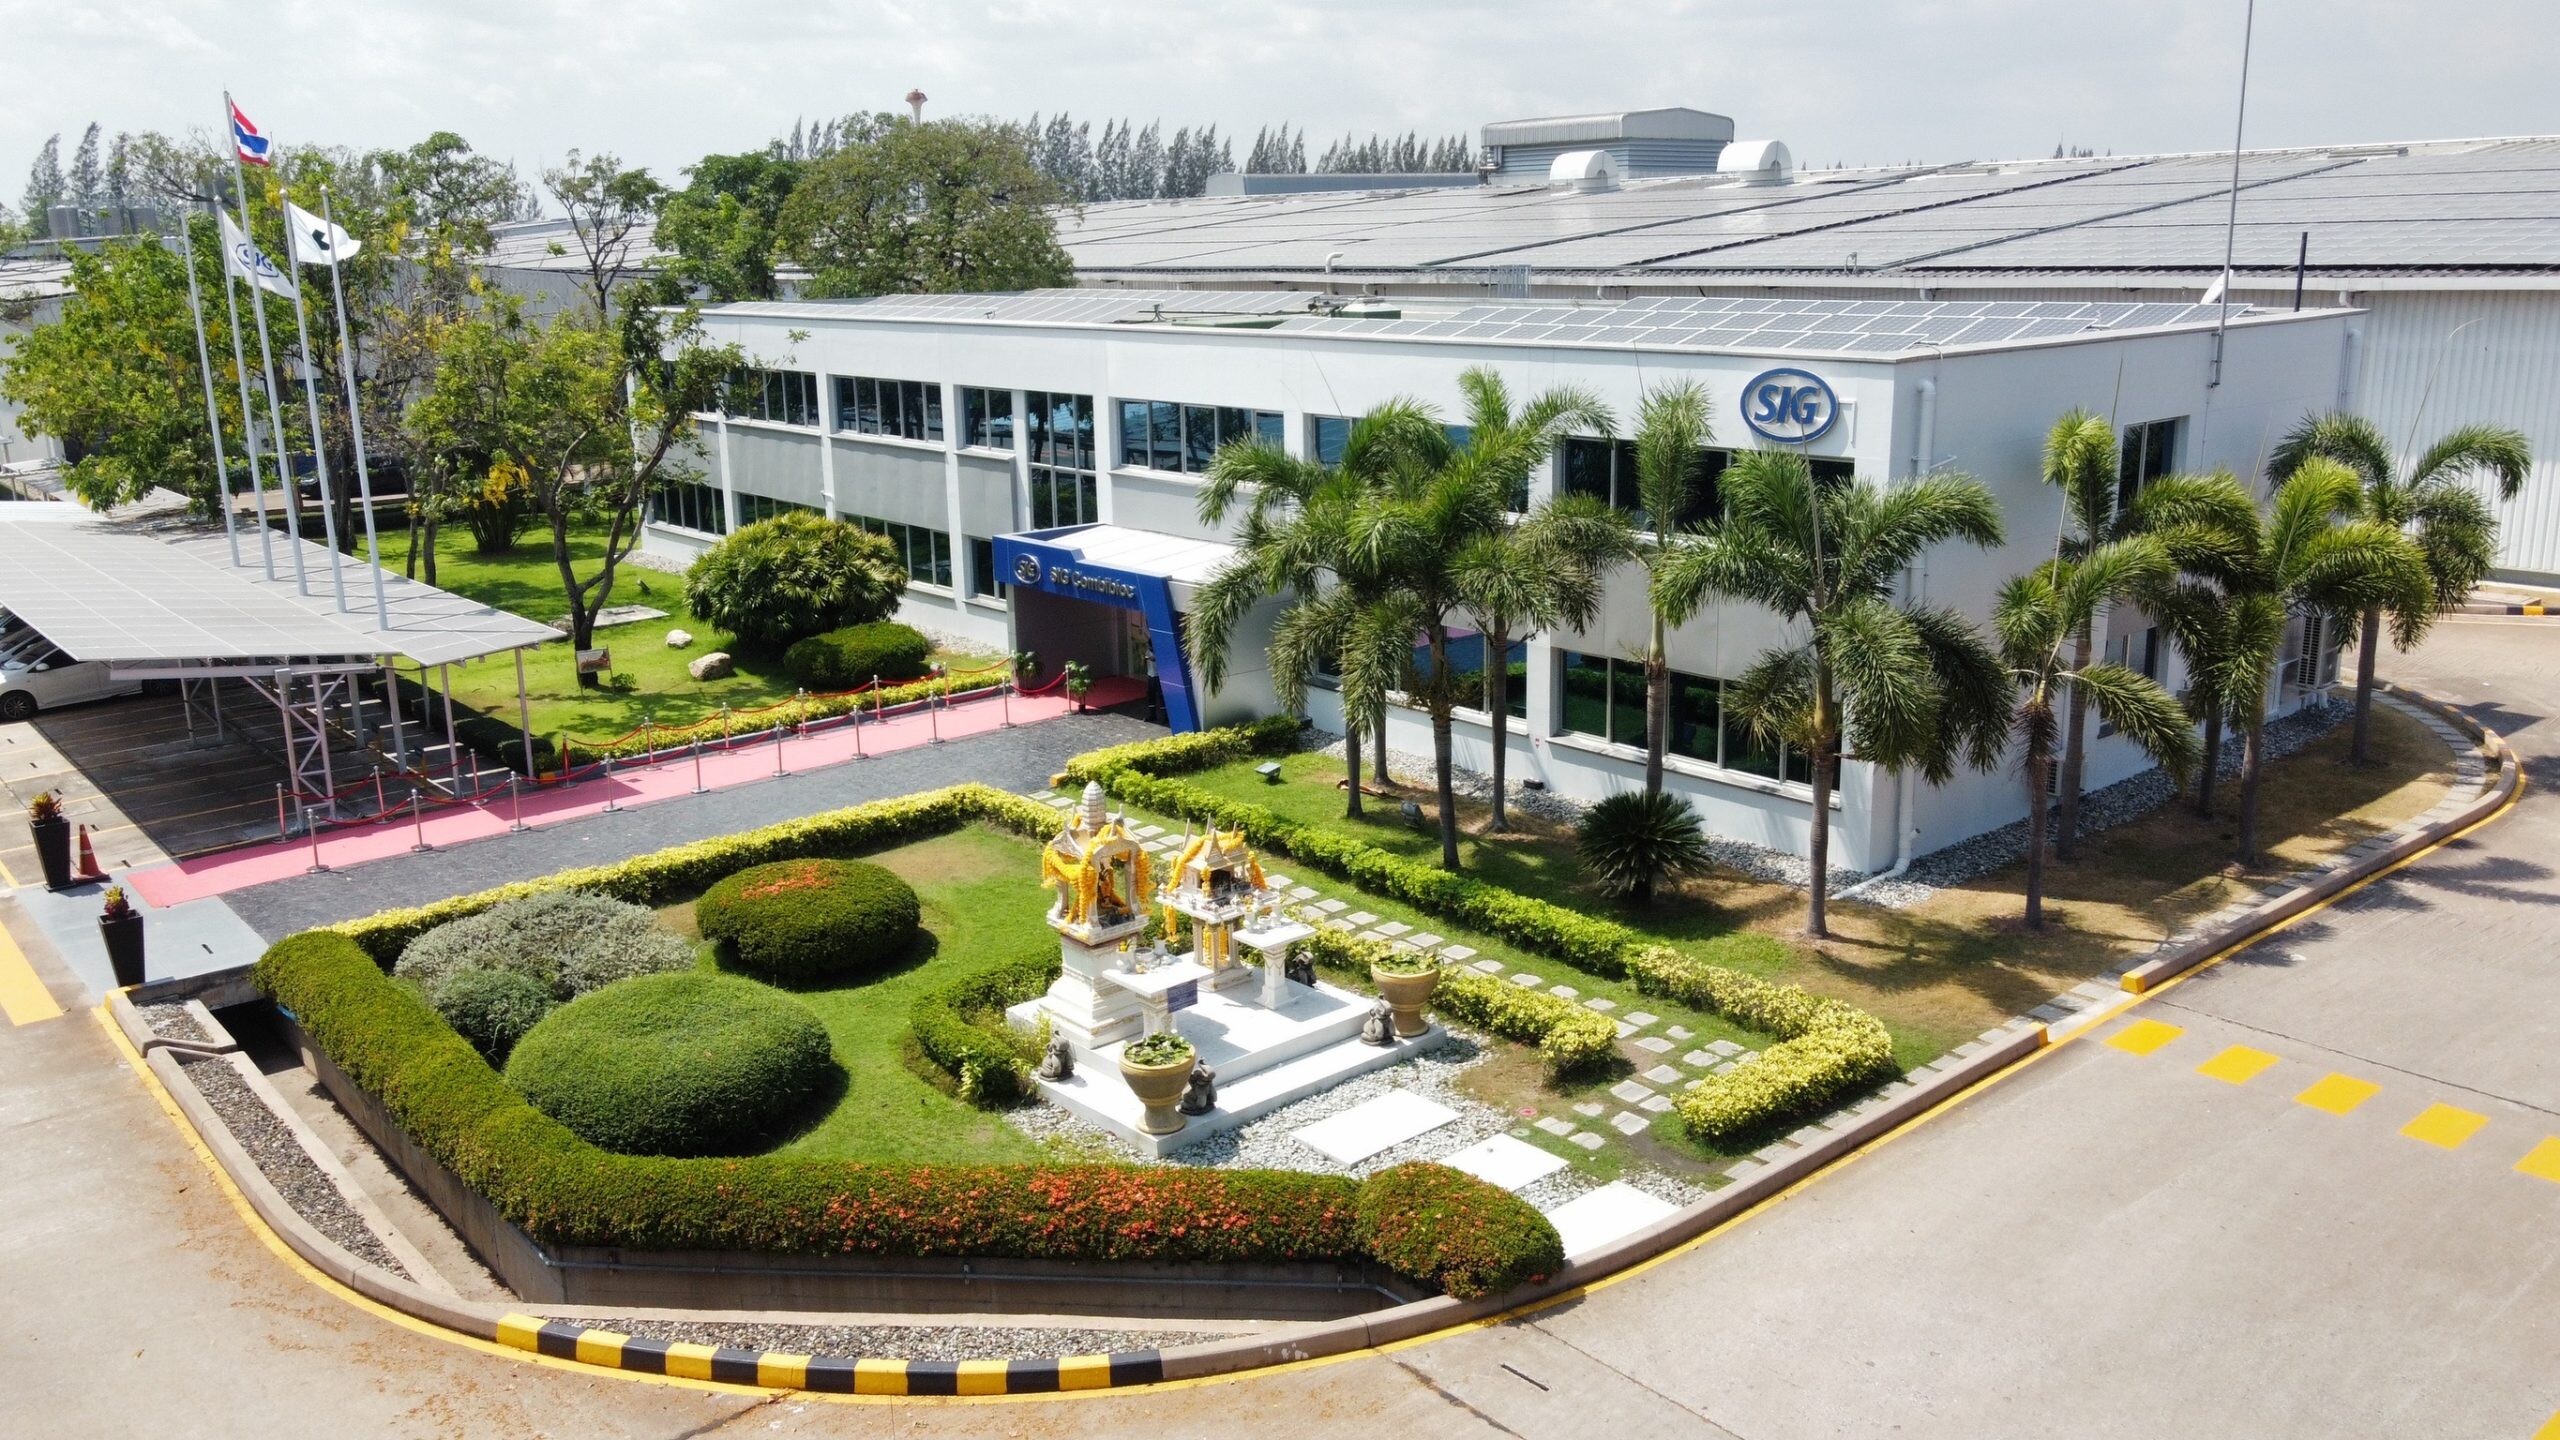 โรงงานบรรจุภัณฑ์เอส ไอ จี ในไทยฉลองครบรอบ 25 ปี ดำเนินธุรกิจด้วยนวัตกรรมและโซลูชันบรรจุภัณฑ์ที่ยั่งยืน